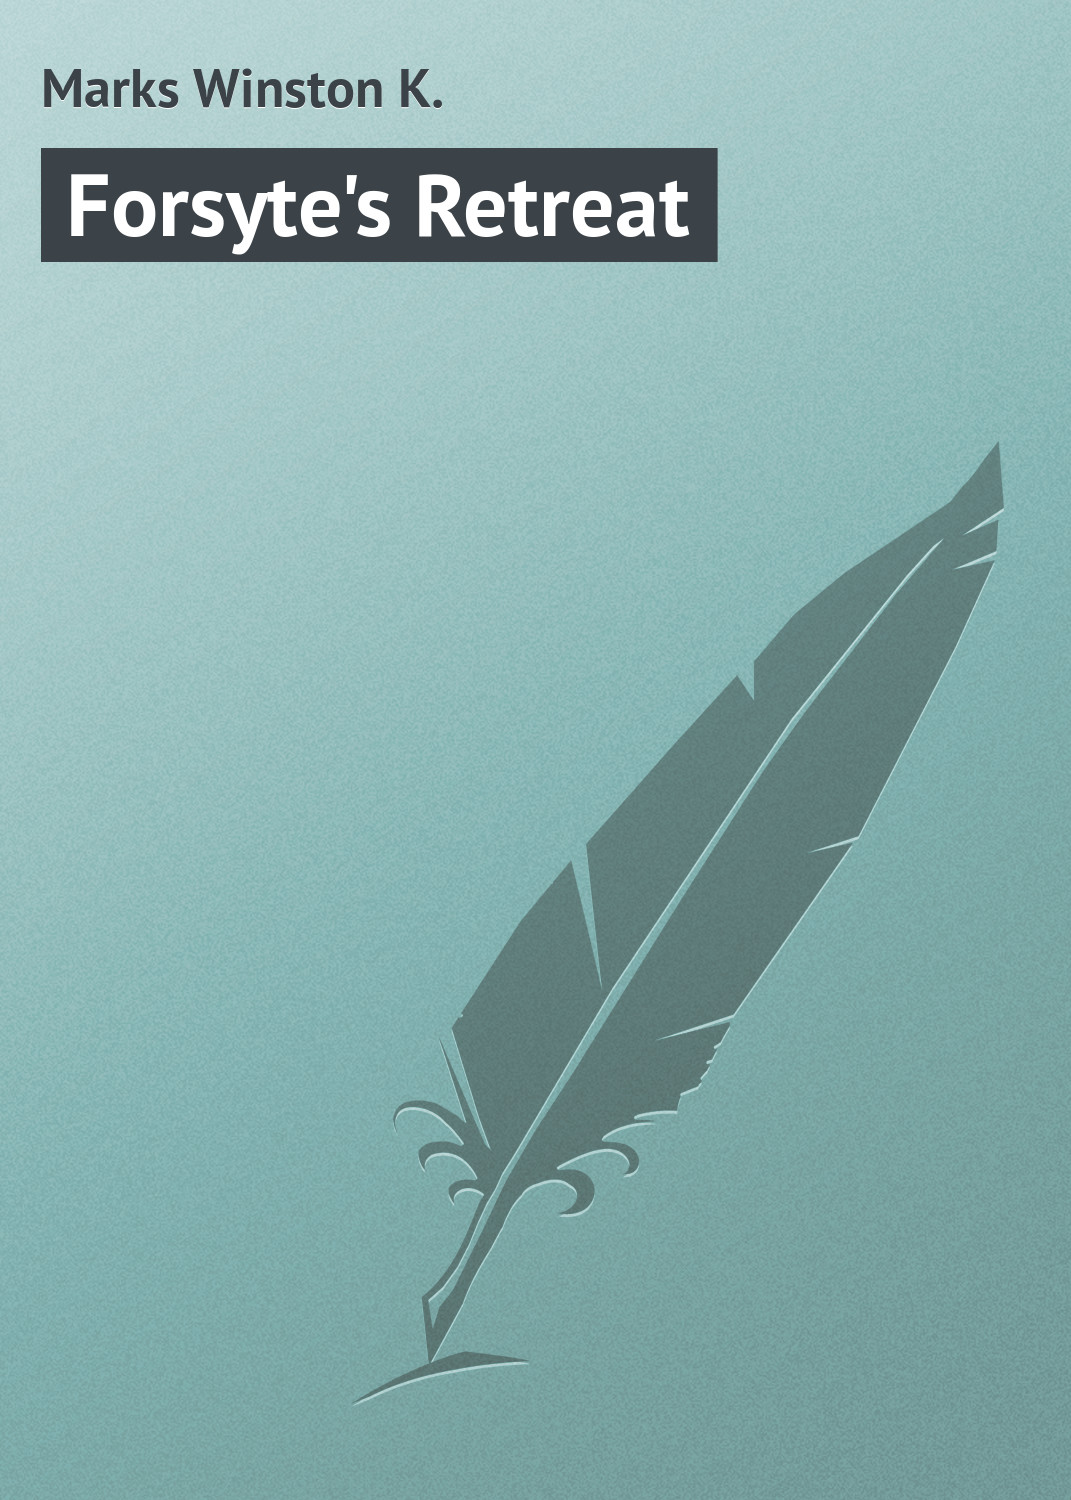 Книга Forsyte's Retreat из серии , созданная Winston Marks, может относится к жанру Иностранные языки, Зарубежная классика. Стоимость электронной книги Forsyte's Retreat с идентификатором 23165907 составляет 5.99 руб.